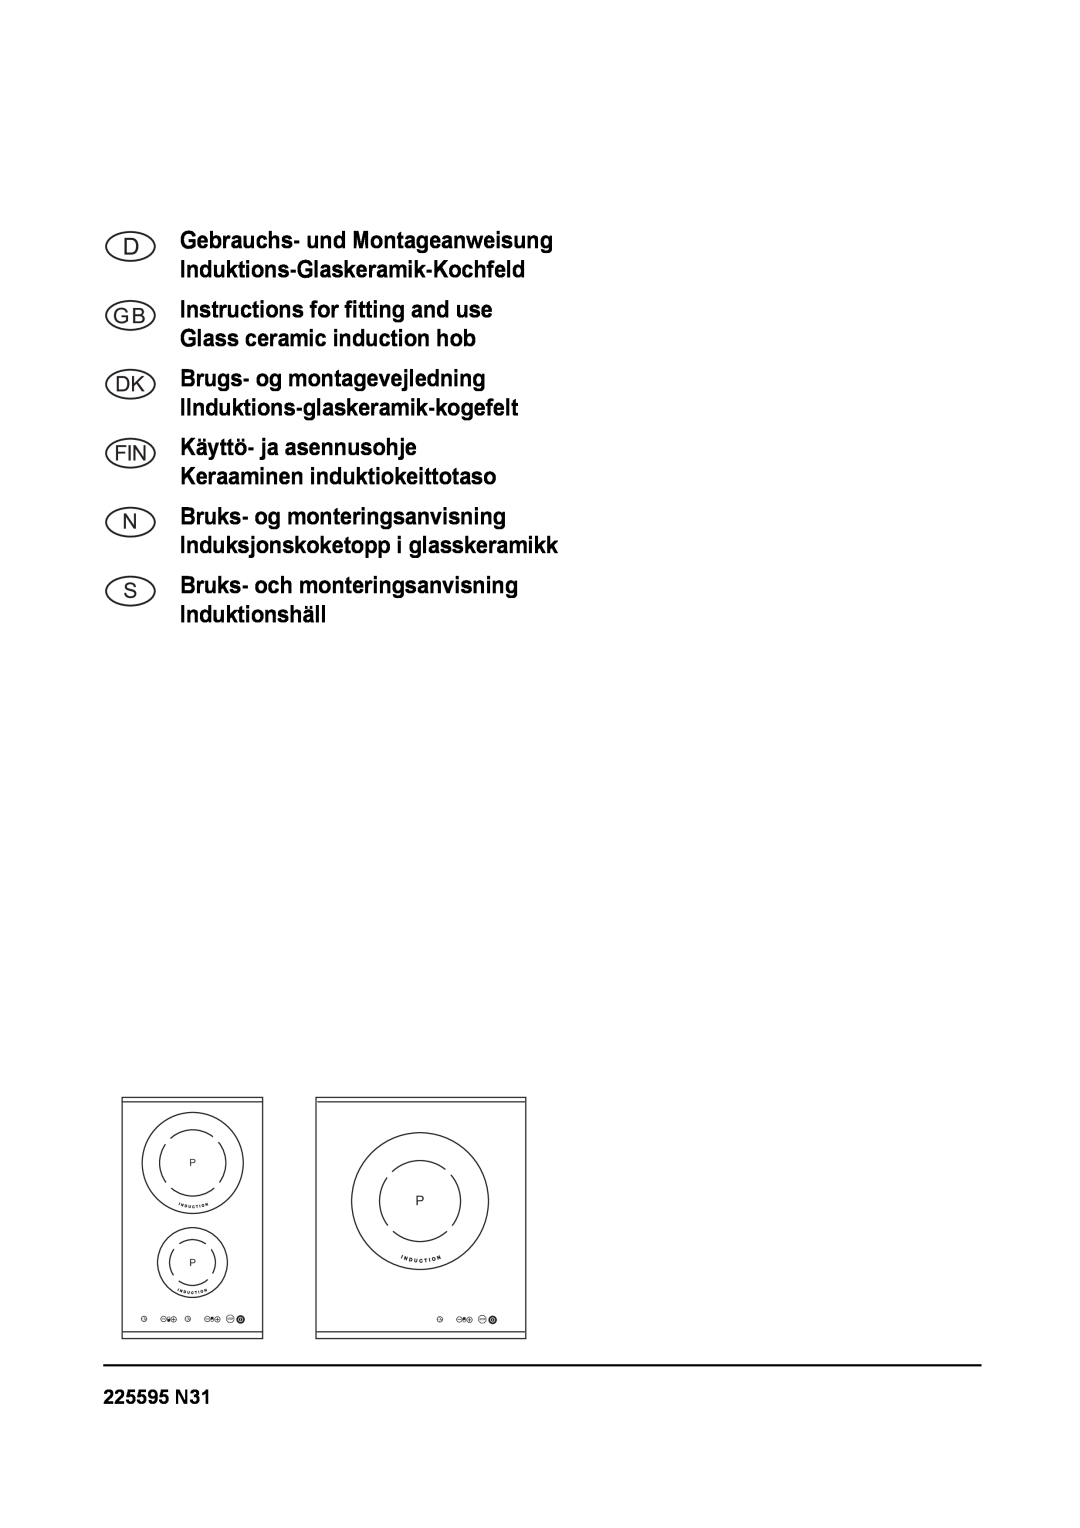 Smeg SE2320ID manual Brugs- og montagevejledning Ilnduktions-glaskeramik-kogefelt, 225595 N31 